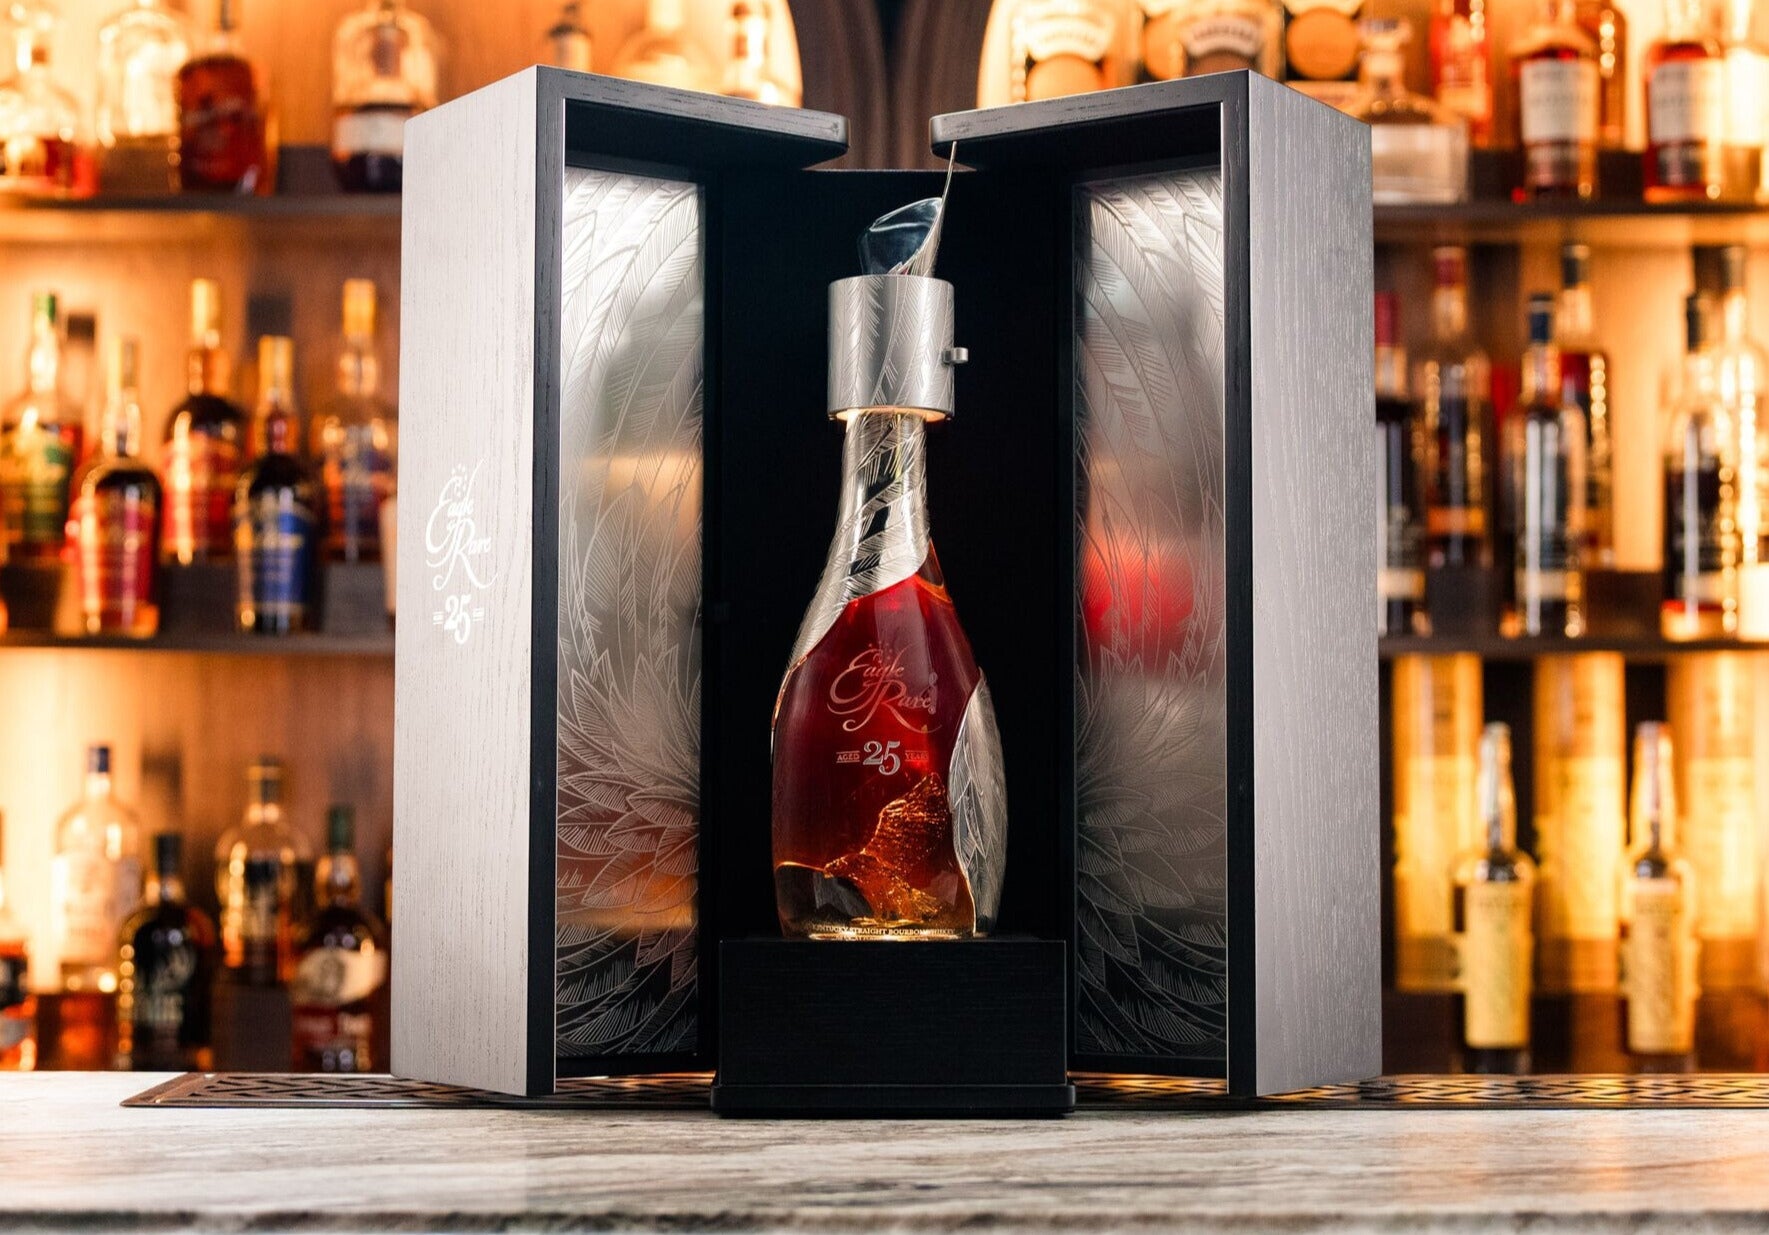 Eagle Rare 25 Year Old Bourbon: A Silver Anniversary Release_Nestor Liquor